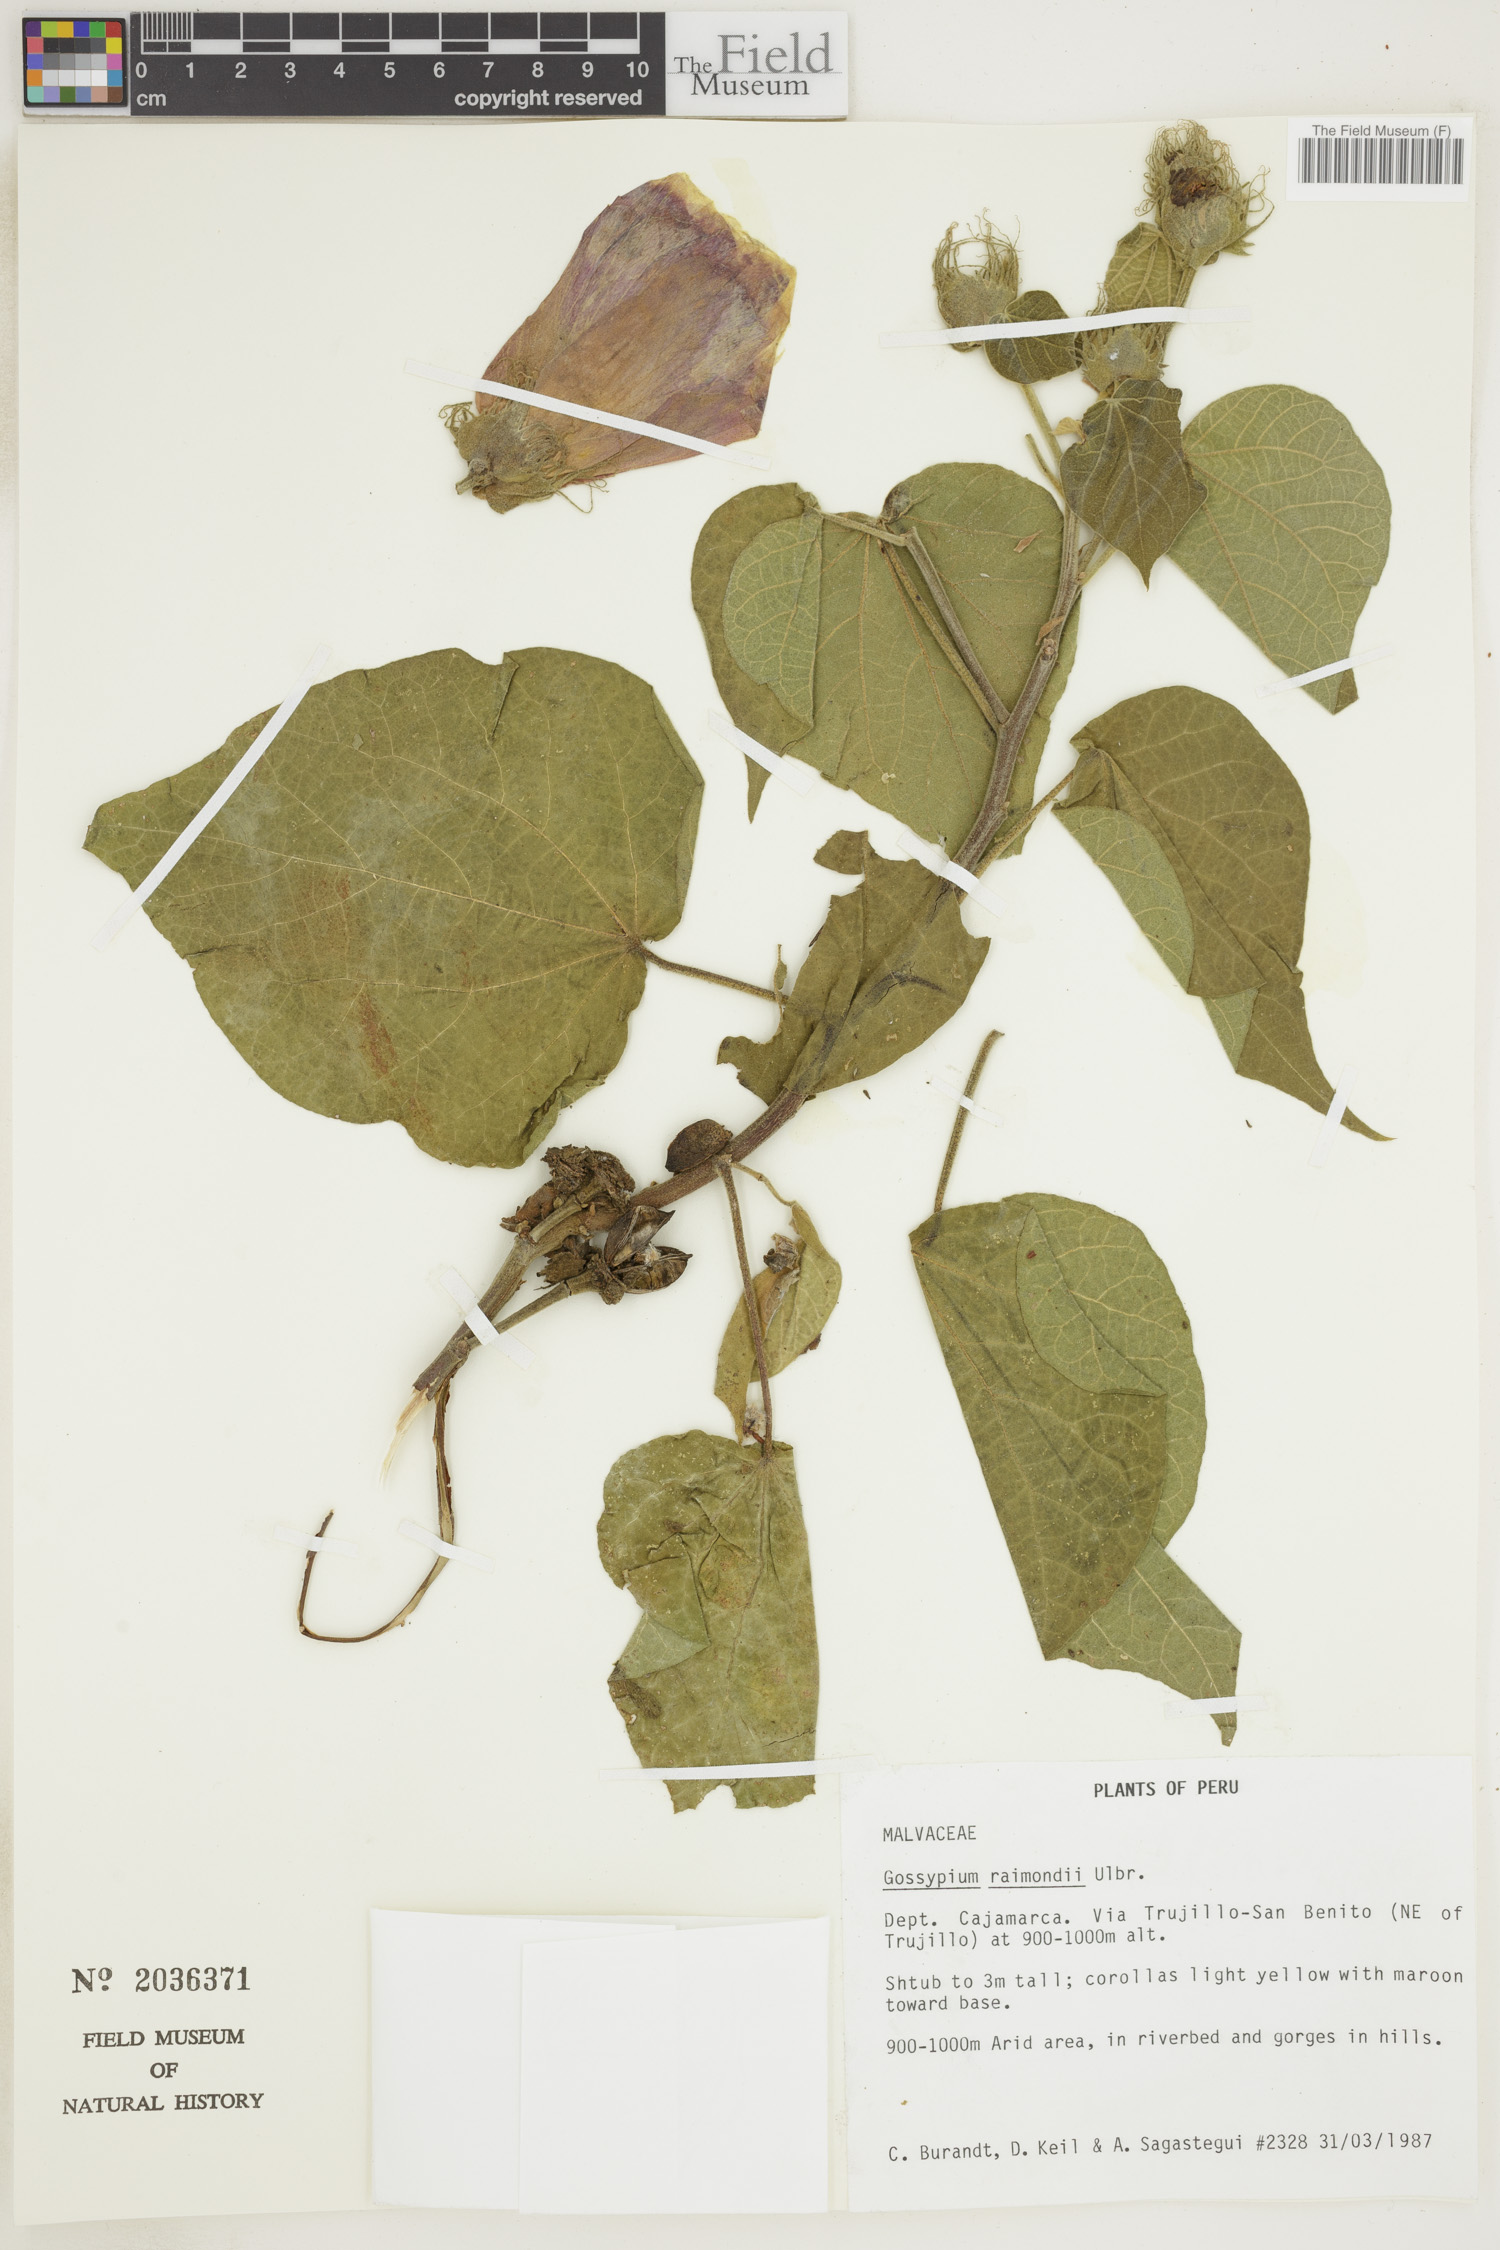 Gossypium raimondii image